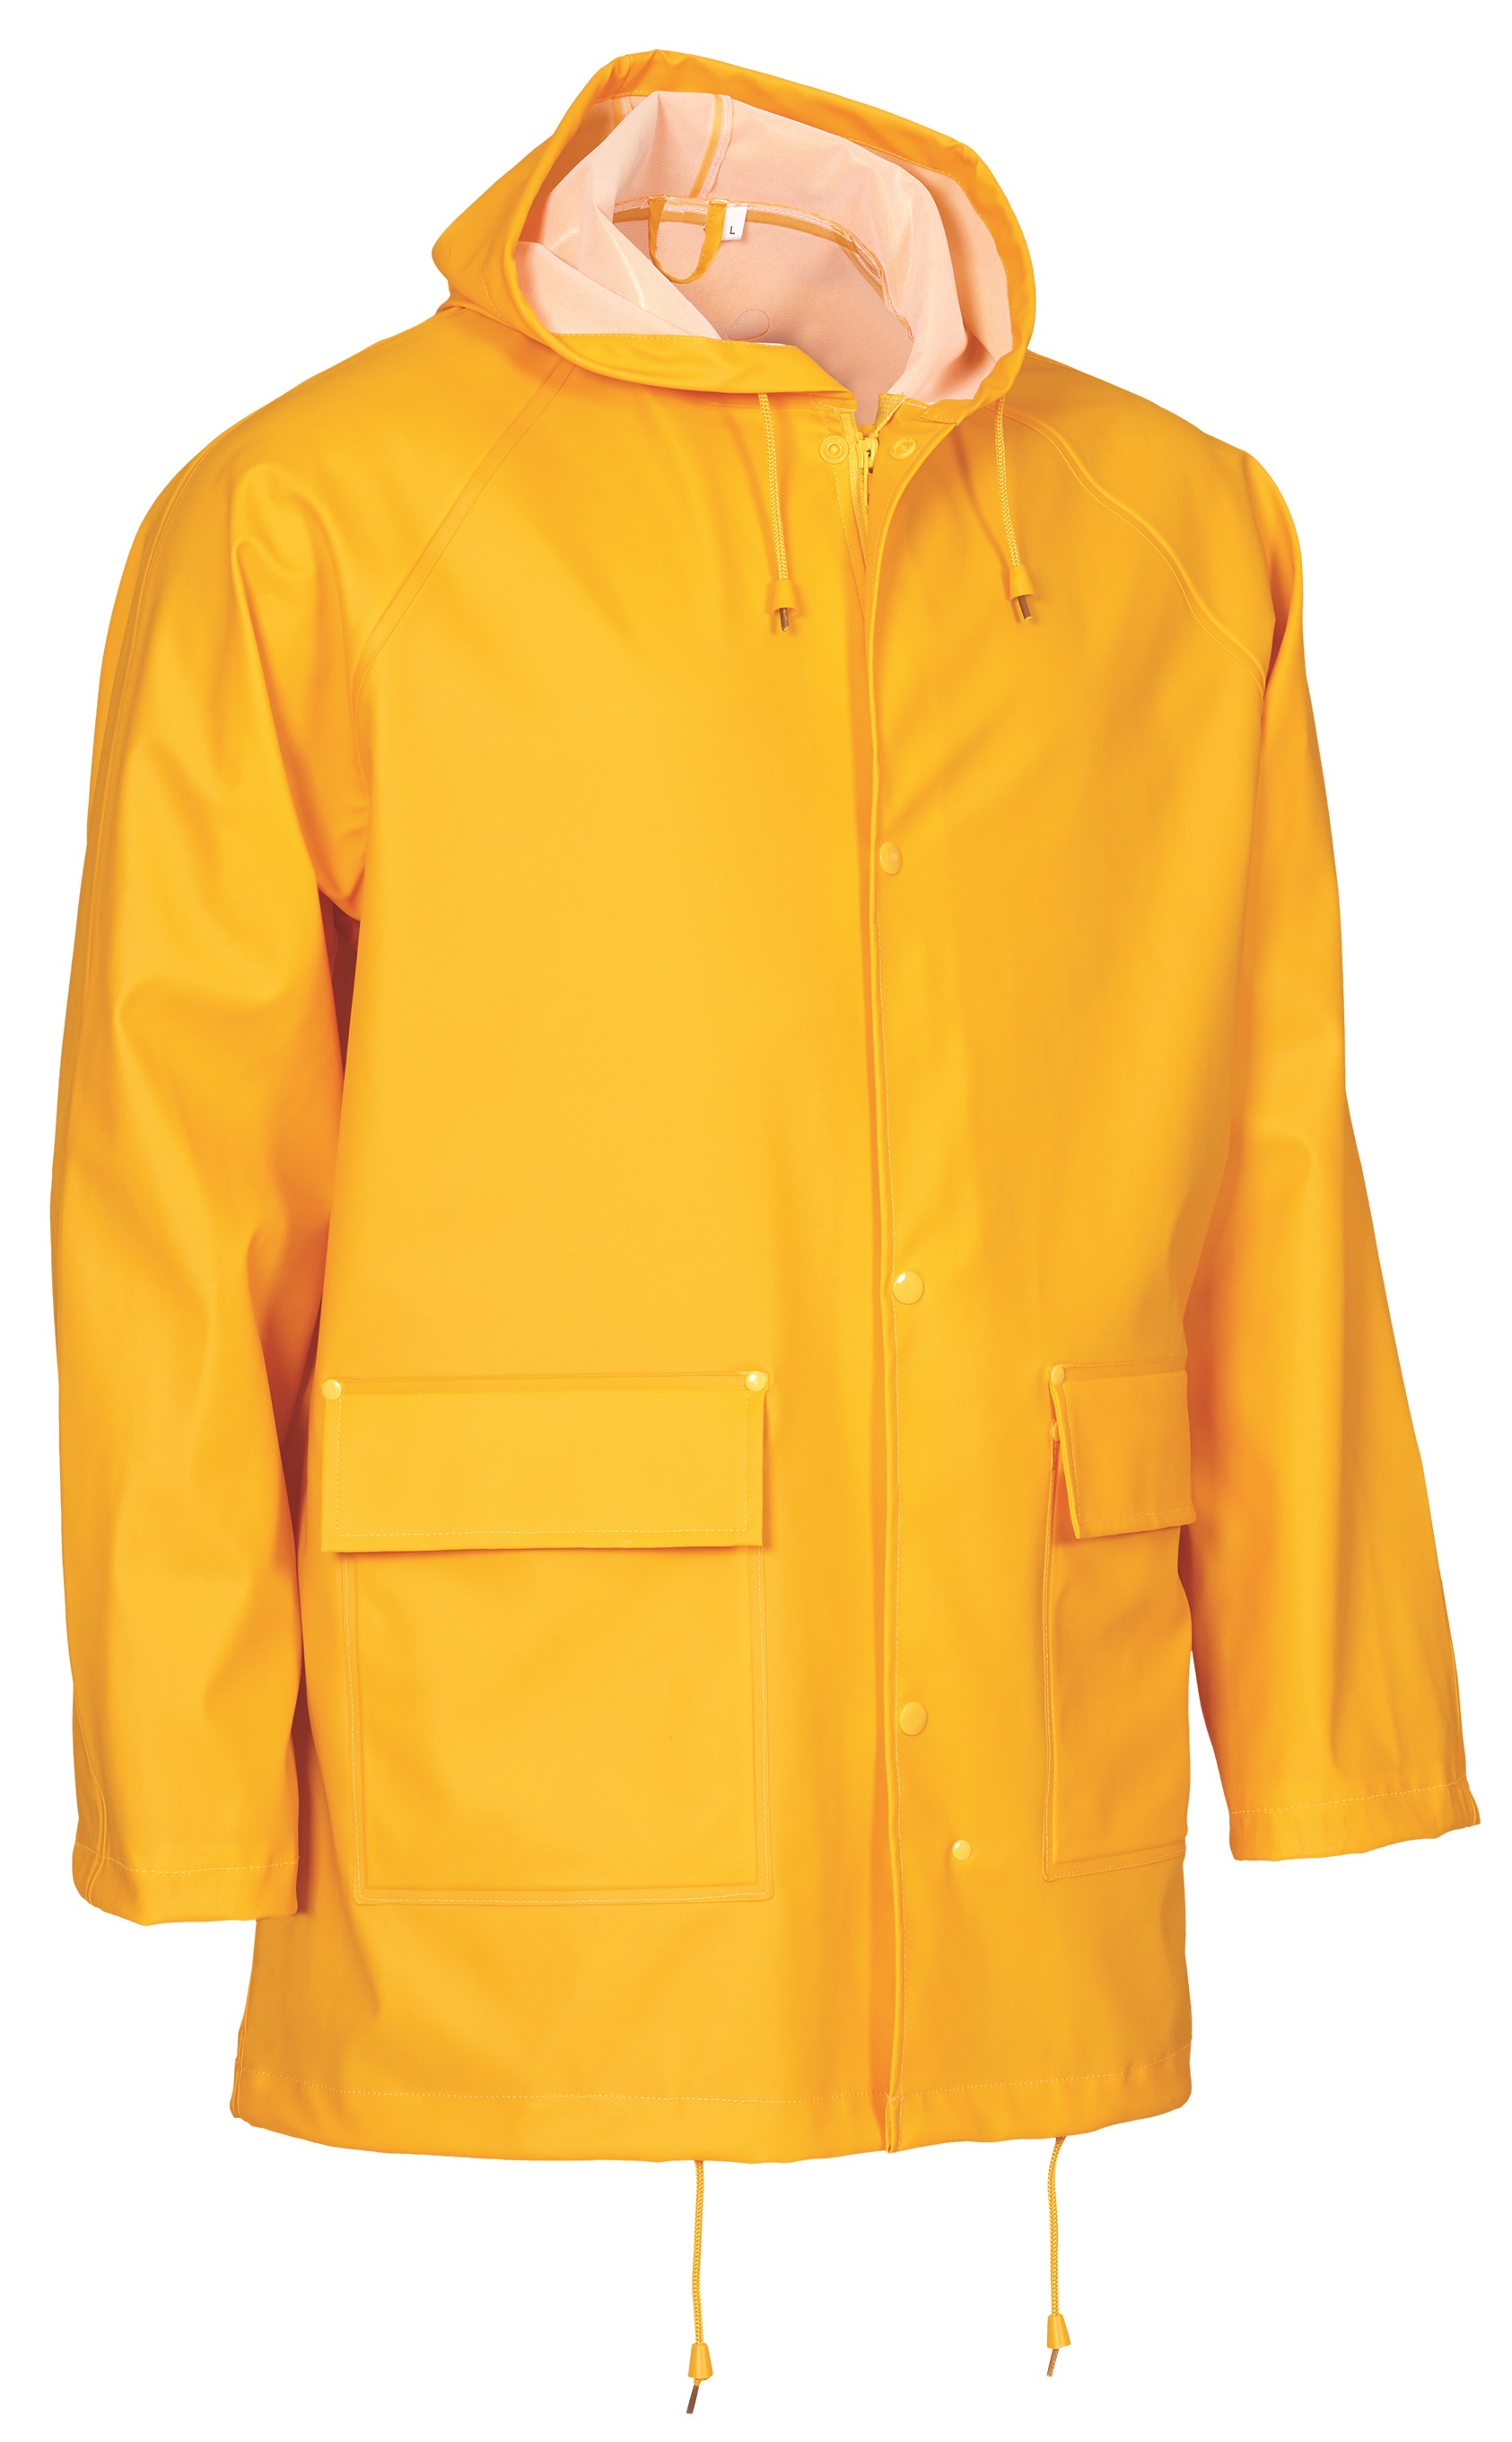 ELKA-Regenschutz, -Regen-Nässe-Wetter-Schutz-Jacke, OUTDOOR, 310g/m², gelb